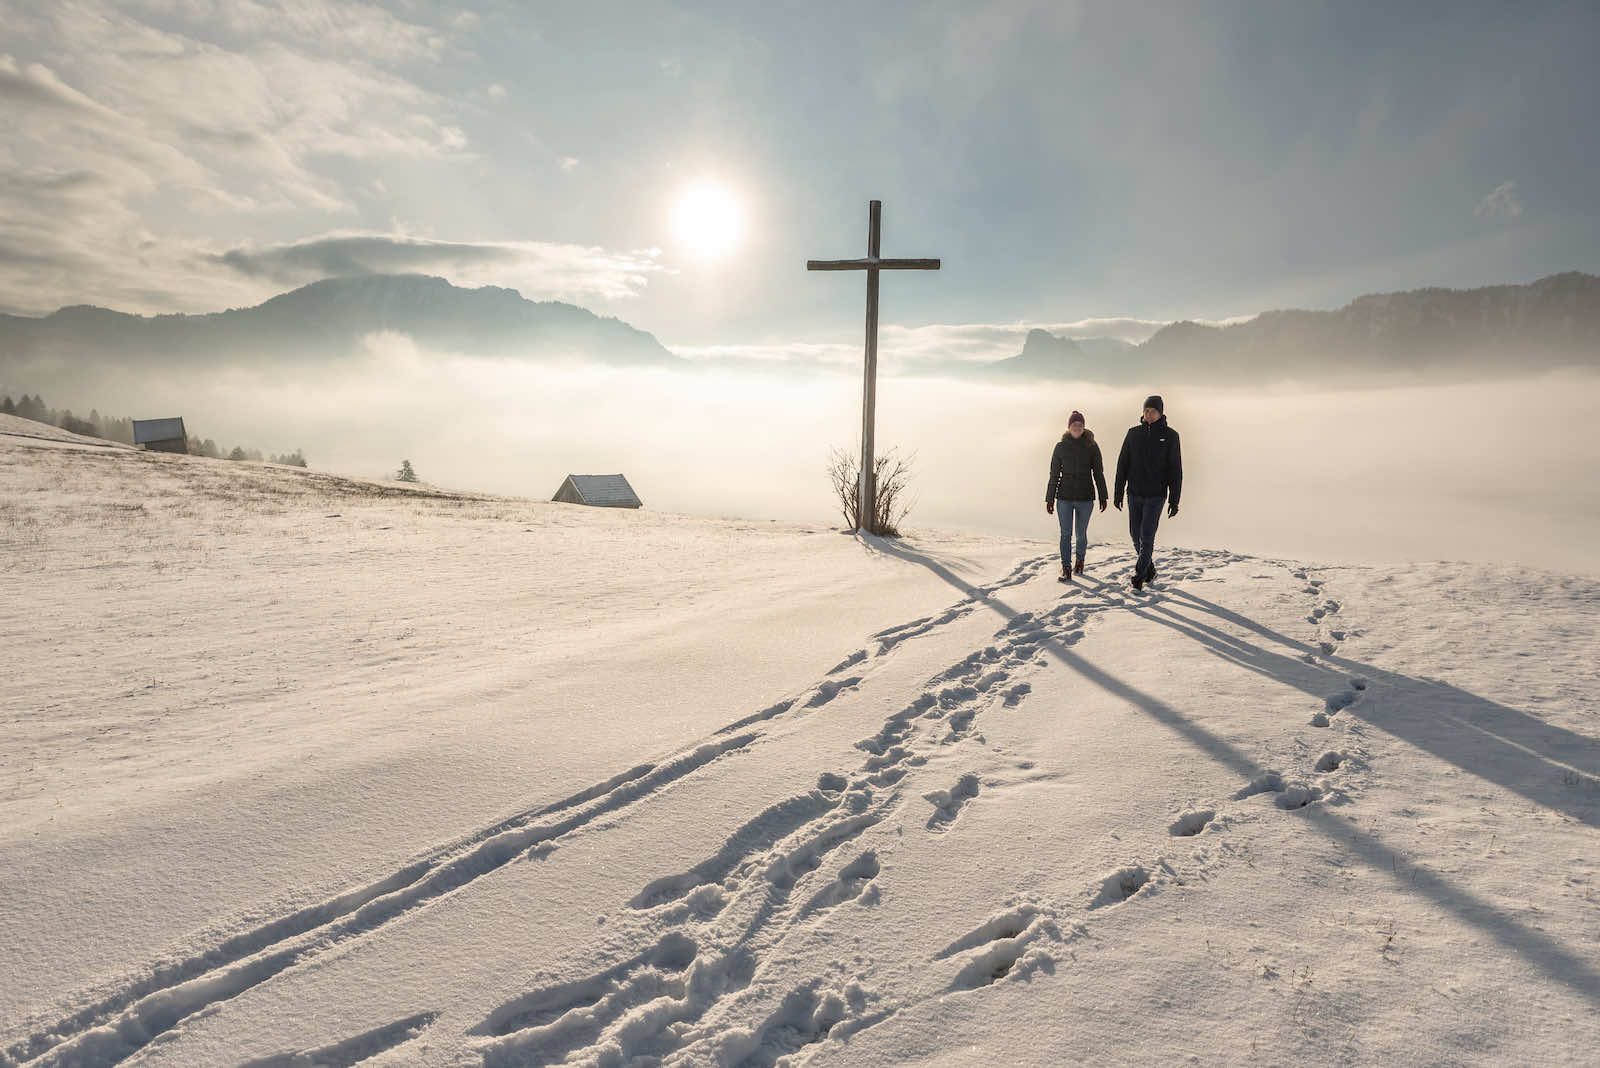 Winterwandern in den Ammergauer Alpen - Bild ©Ammergauer Alpen GmbH, Simon Bauer